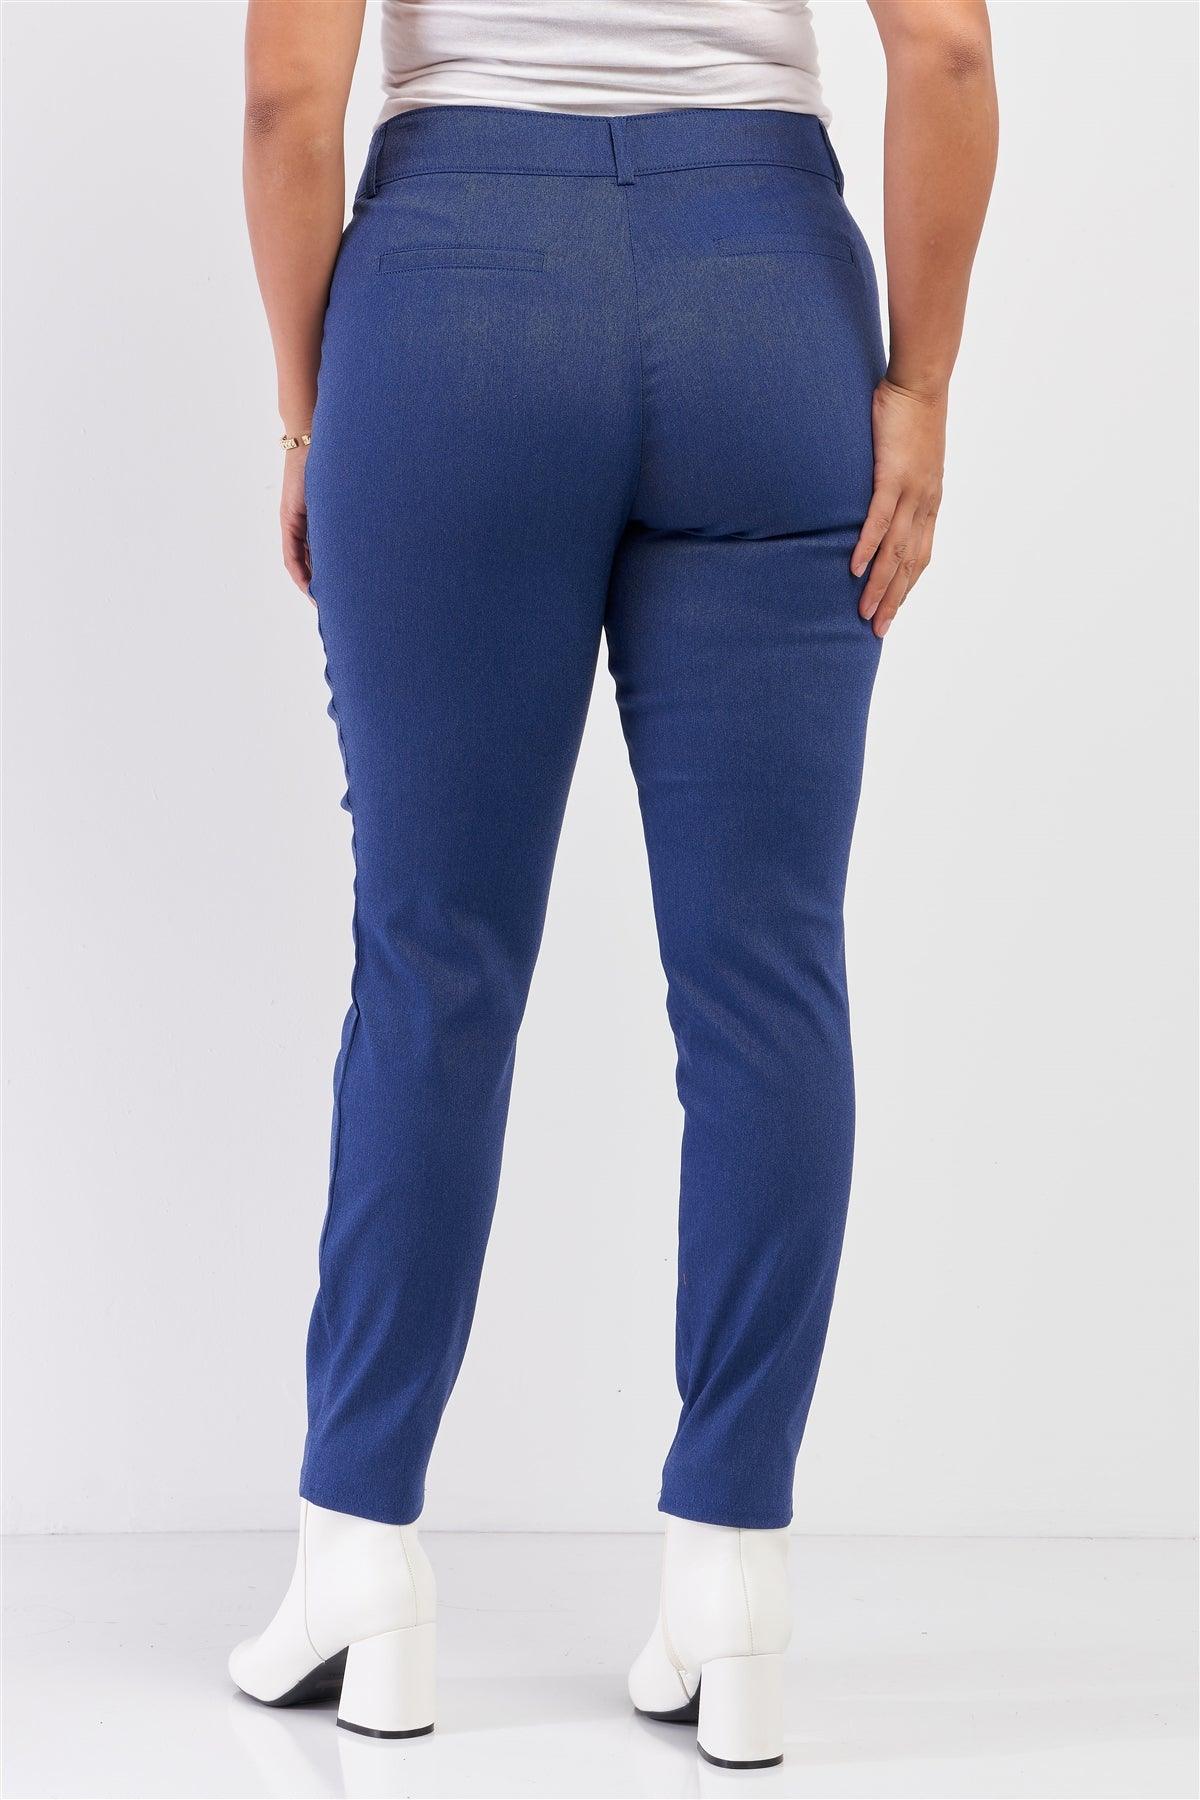 Junior Plus Medium Blue Mid-Rise Denim Legging Slim Fit Pants /2-2-1